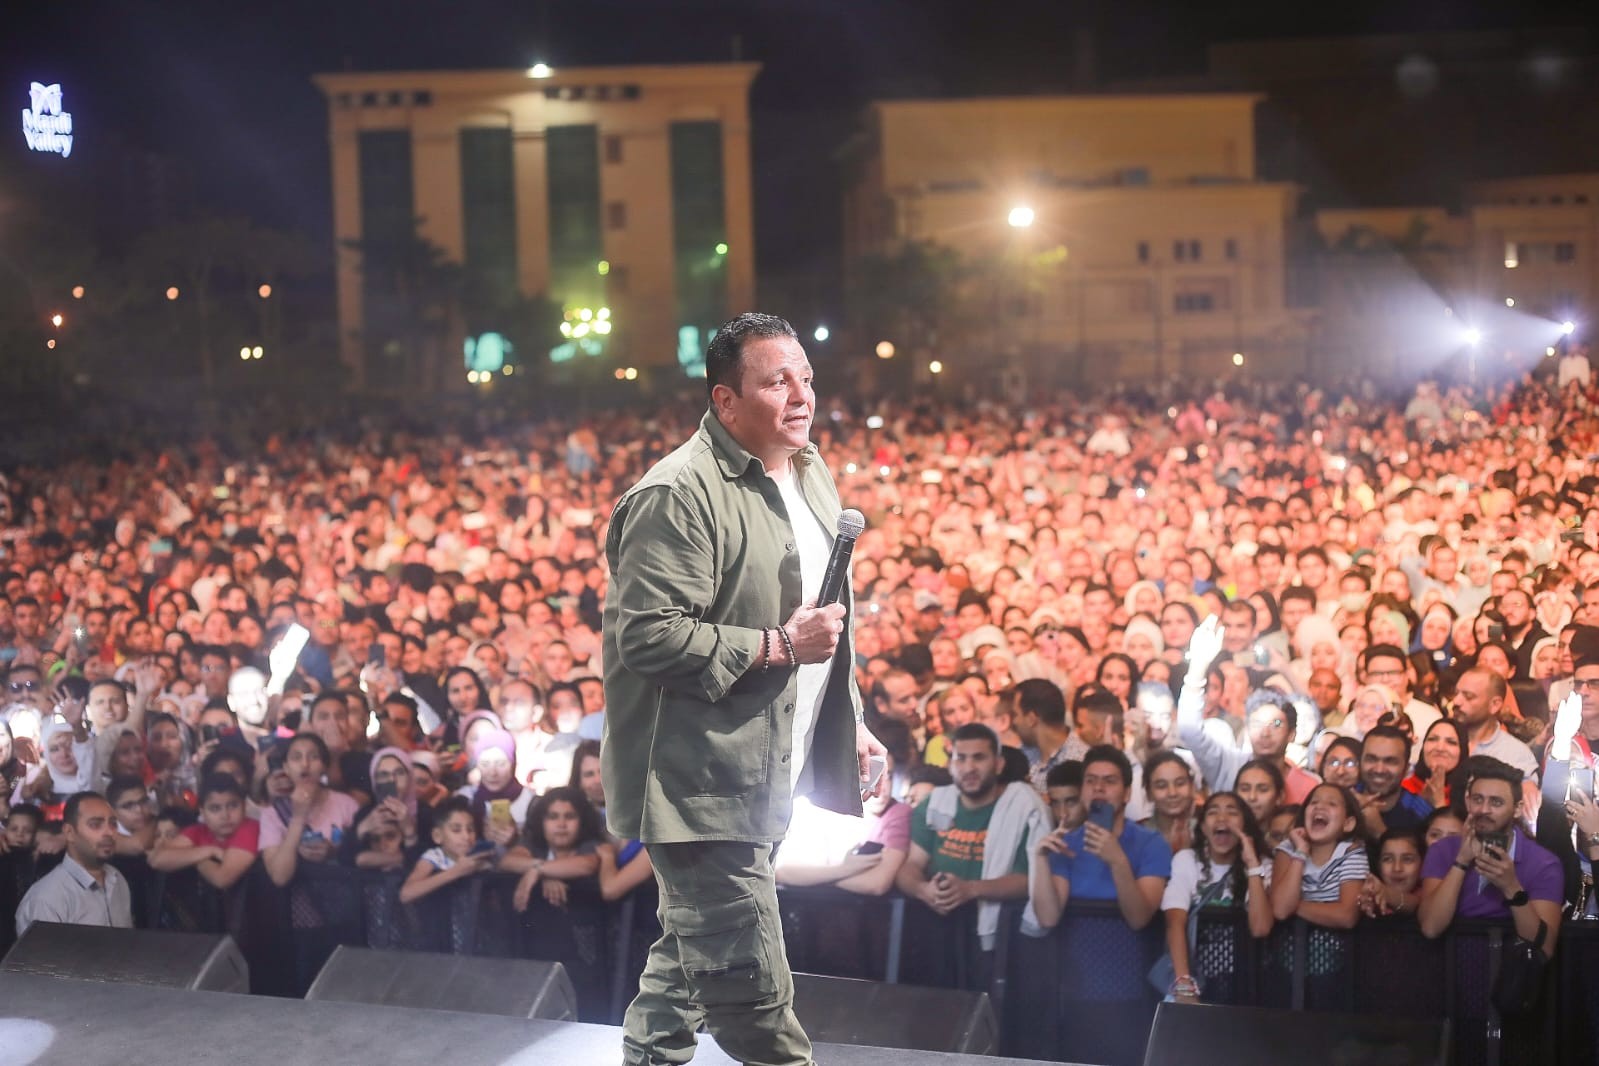 شاهد: محمد فؤاد يبهر الجمهور بأغنيته "بين إيديك"